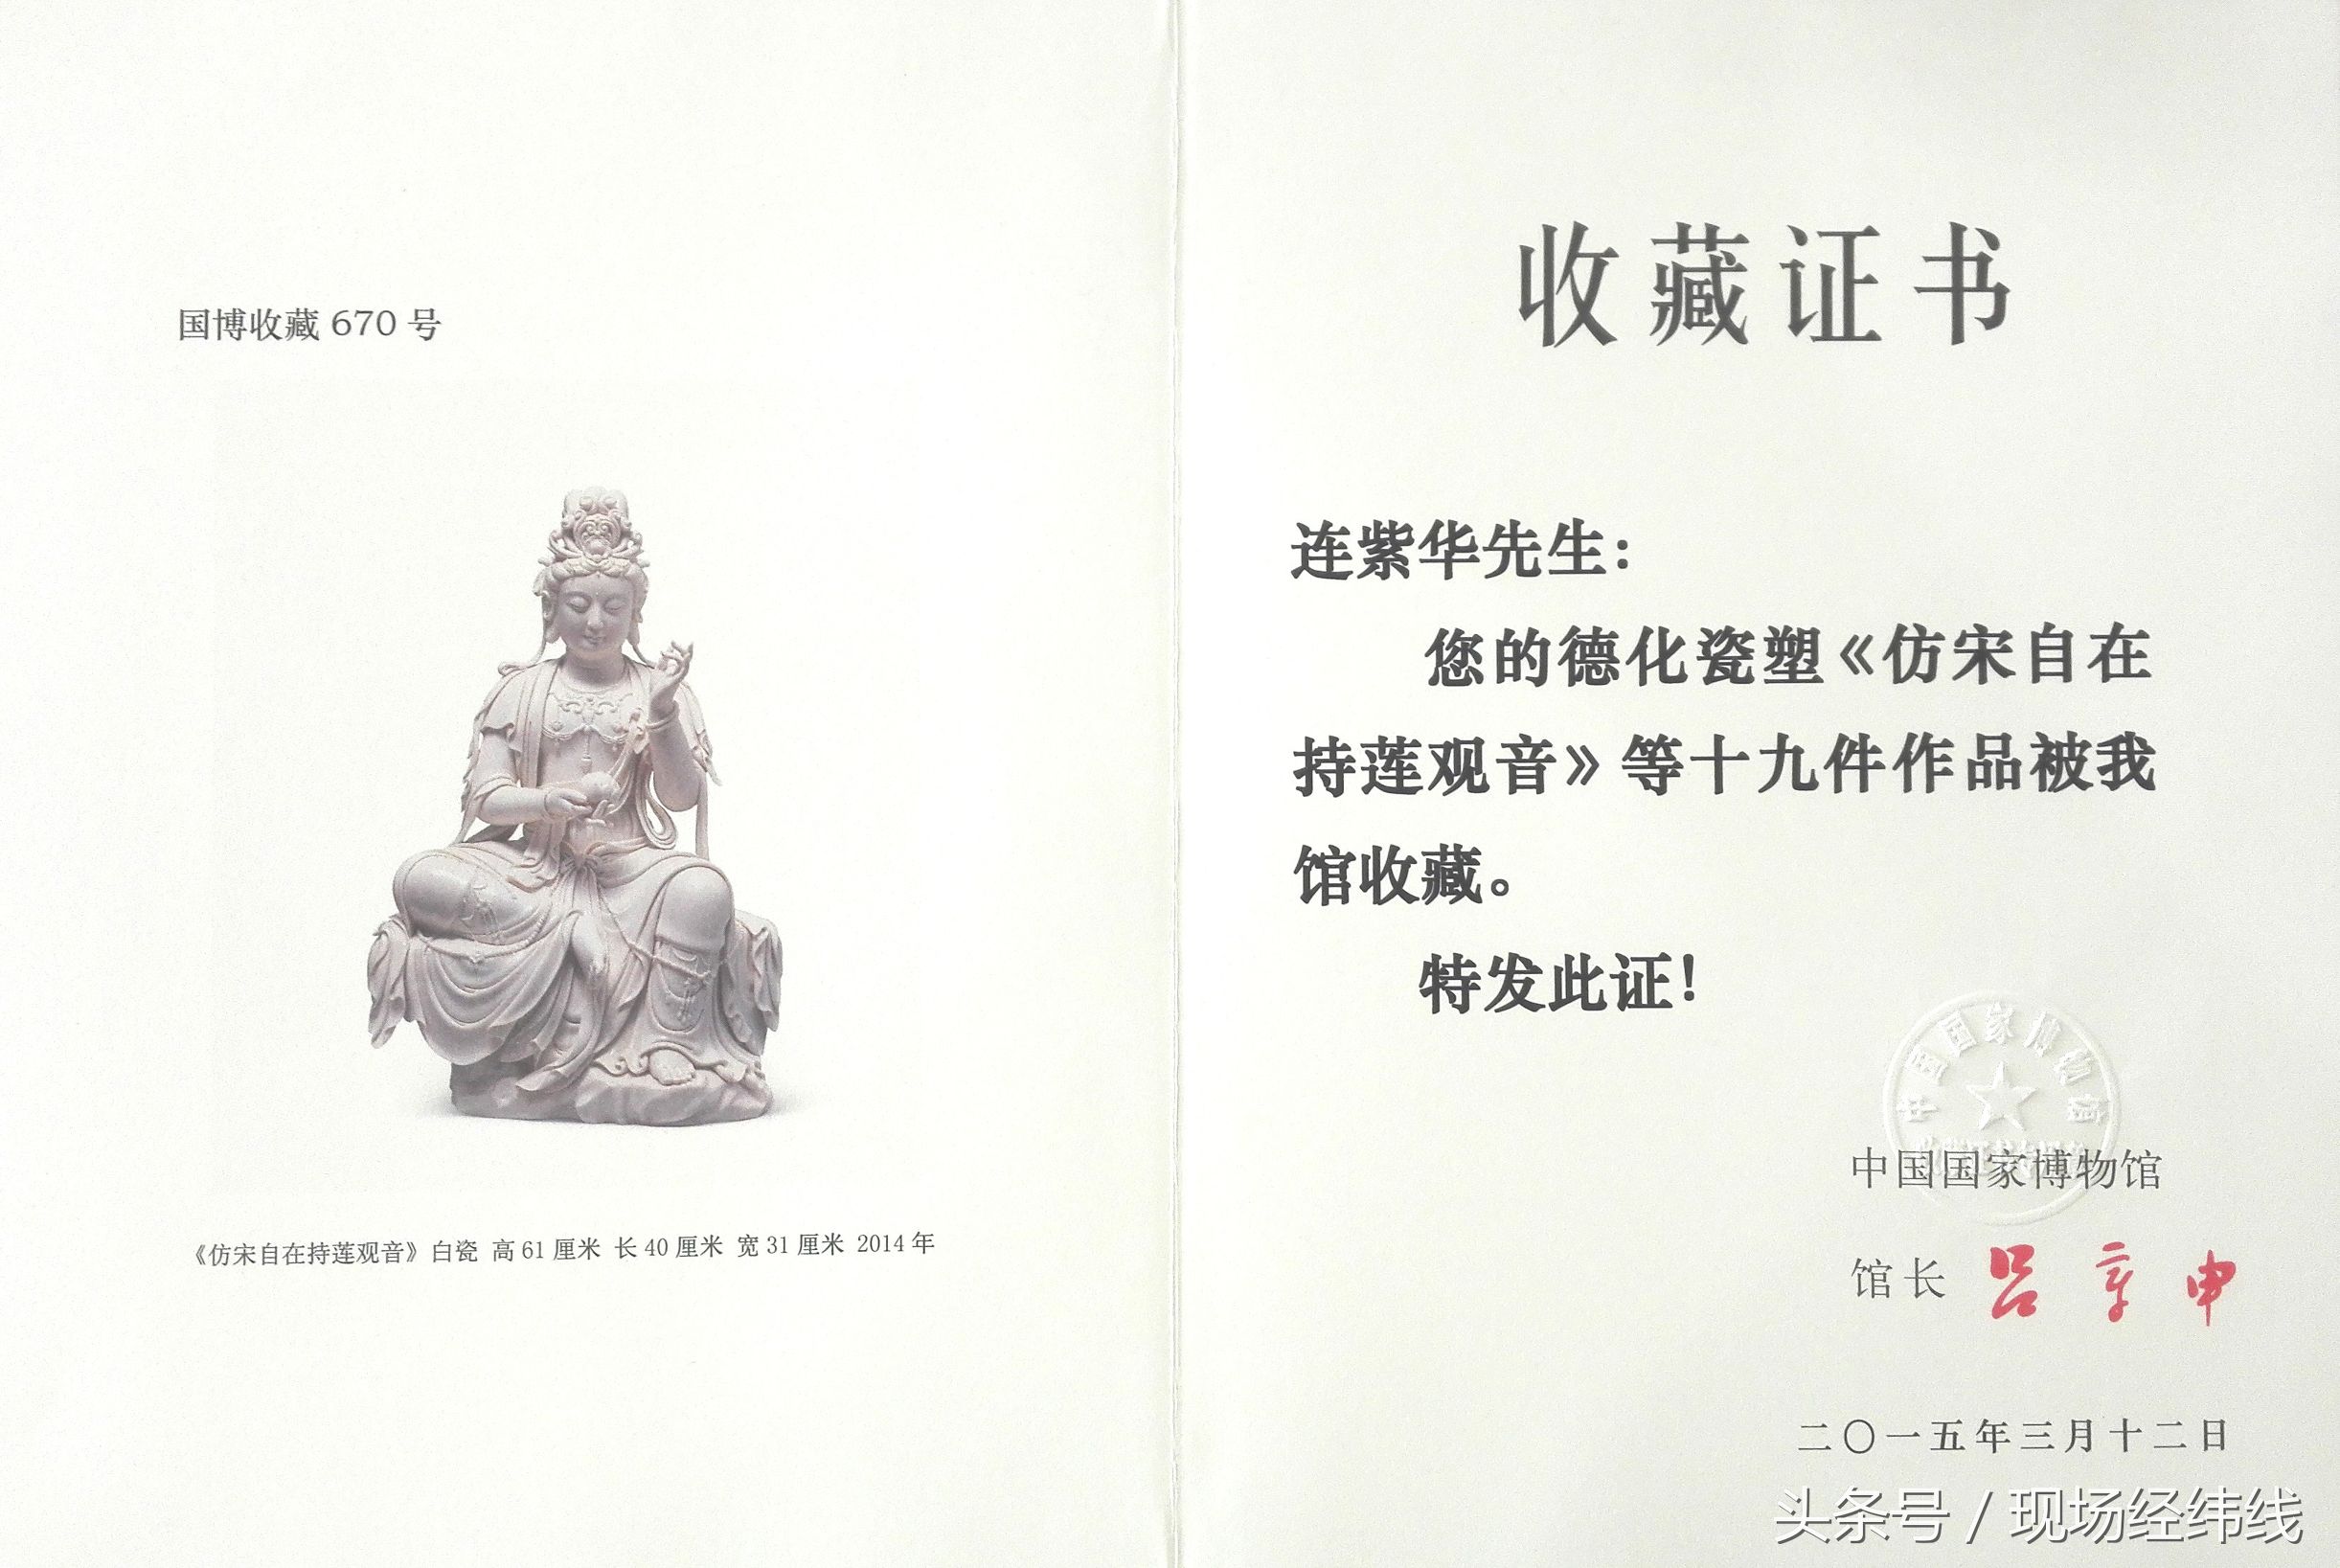 郑燕兴手记——陶瓷世界里的“慈悲济世”大师连紫华